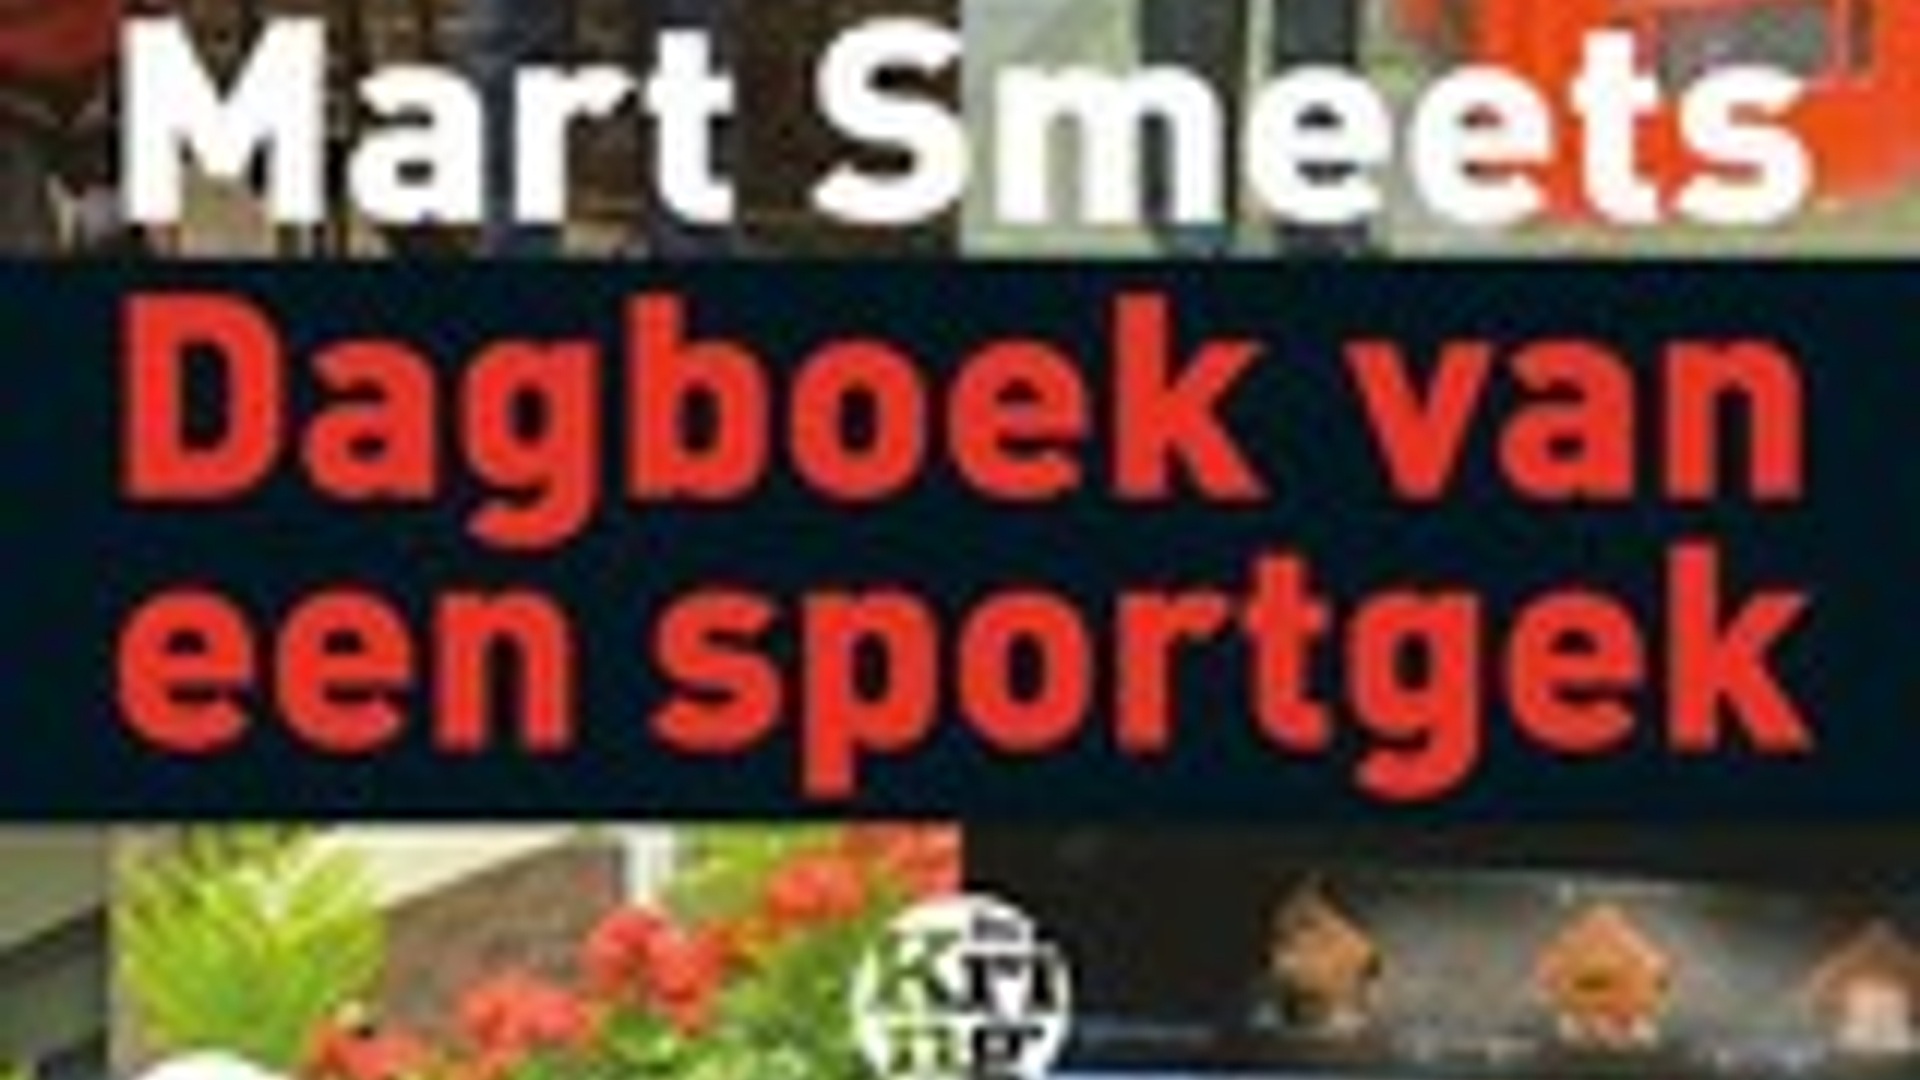 16223764-Dagboek-van-een-sportgek-Mart-Smeets.jpeg